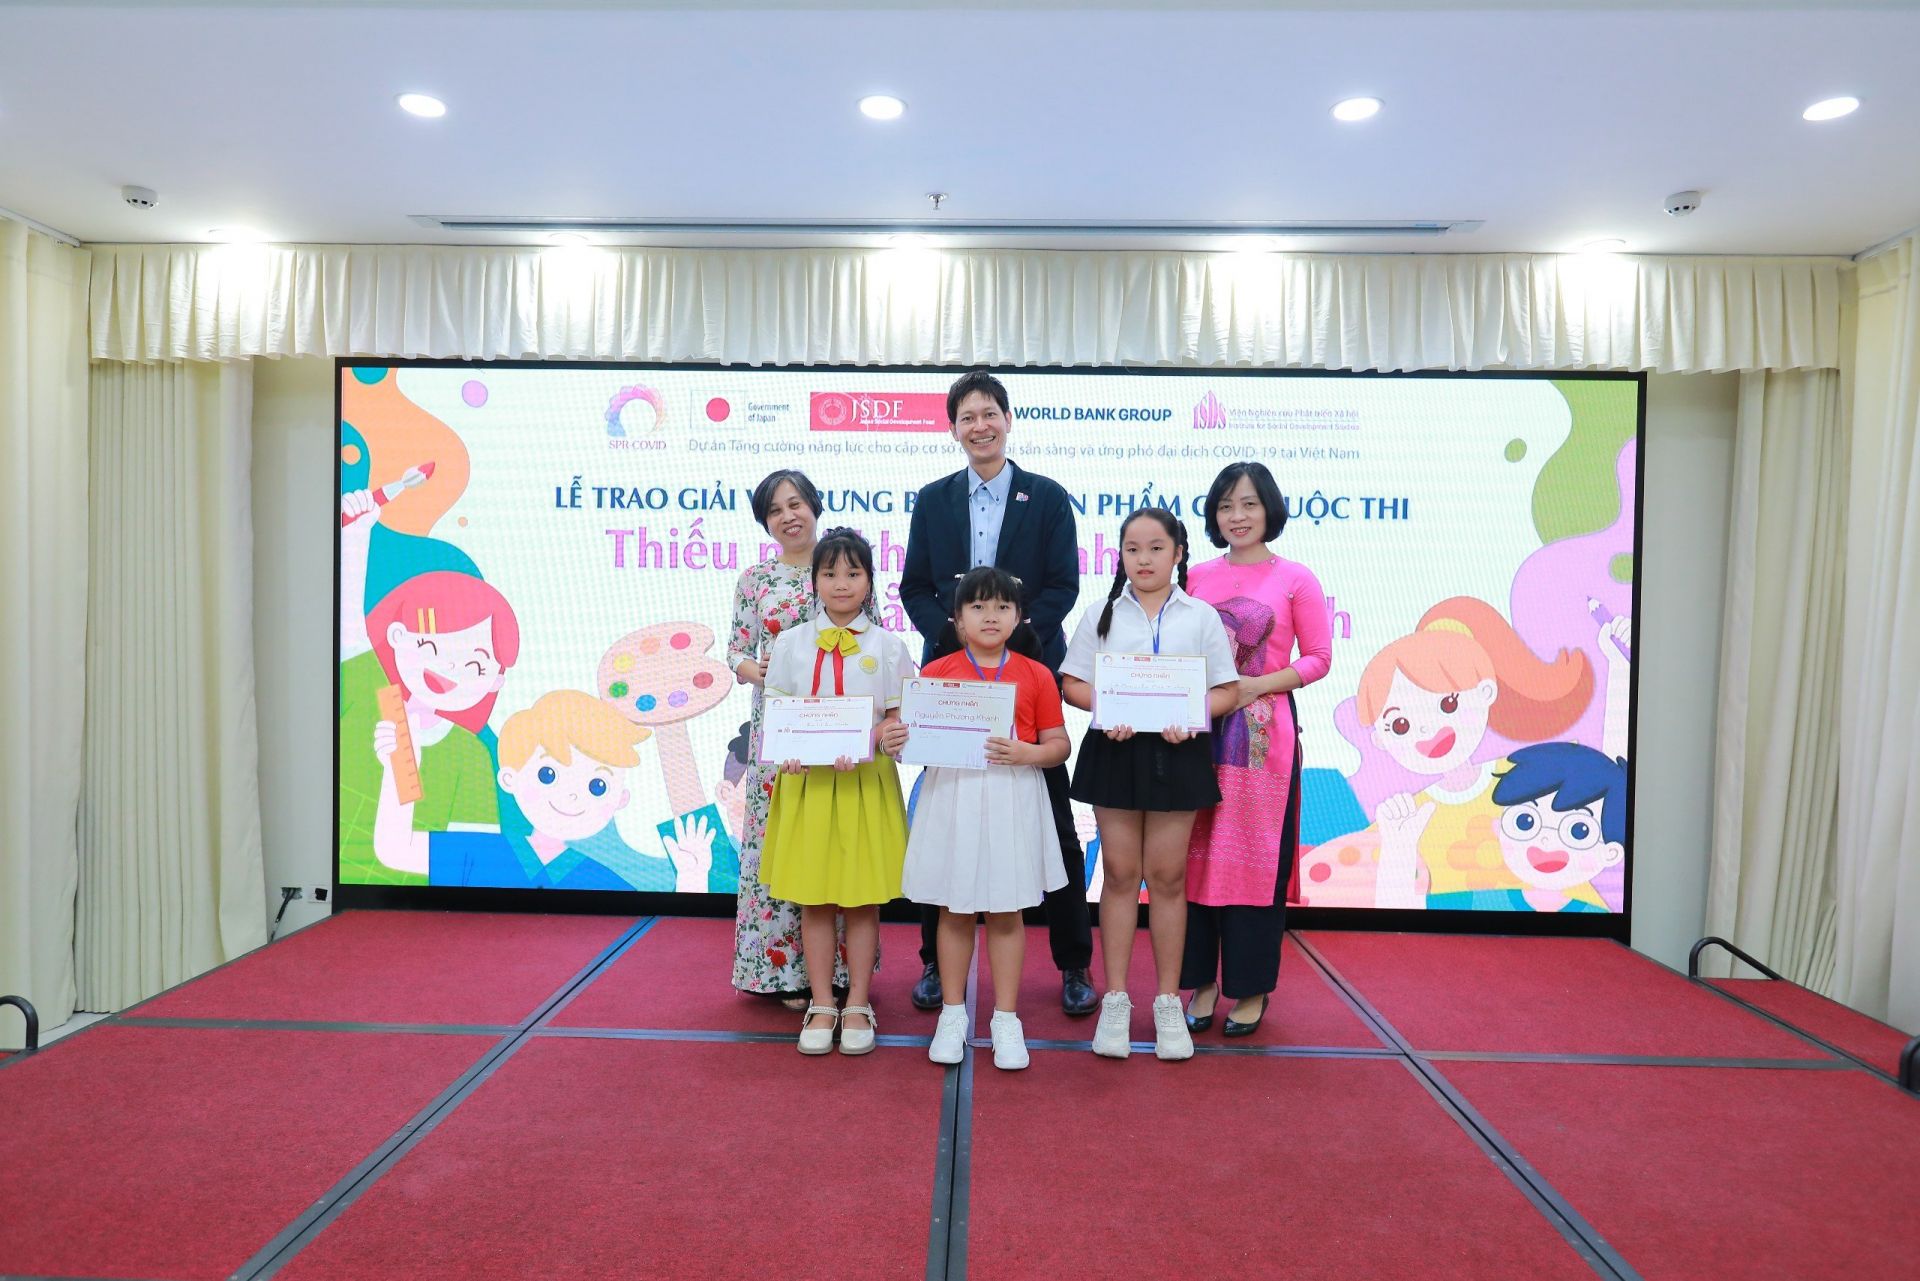 Bí thư thứ nhất đại sứ quán Nhật Bản và đại diện Ngân hàng Thế giới trao giải cho các em học sinh.